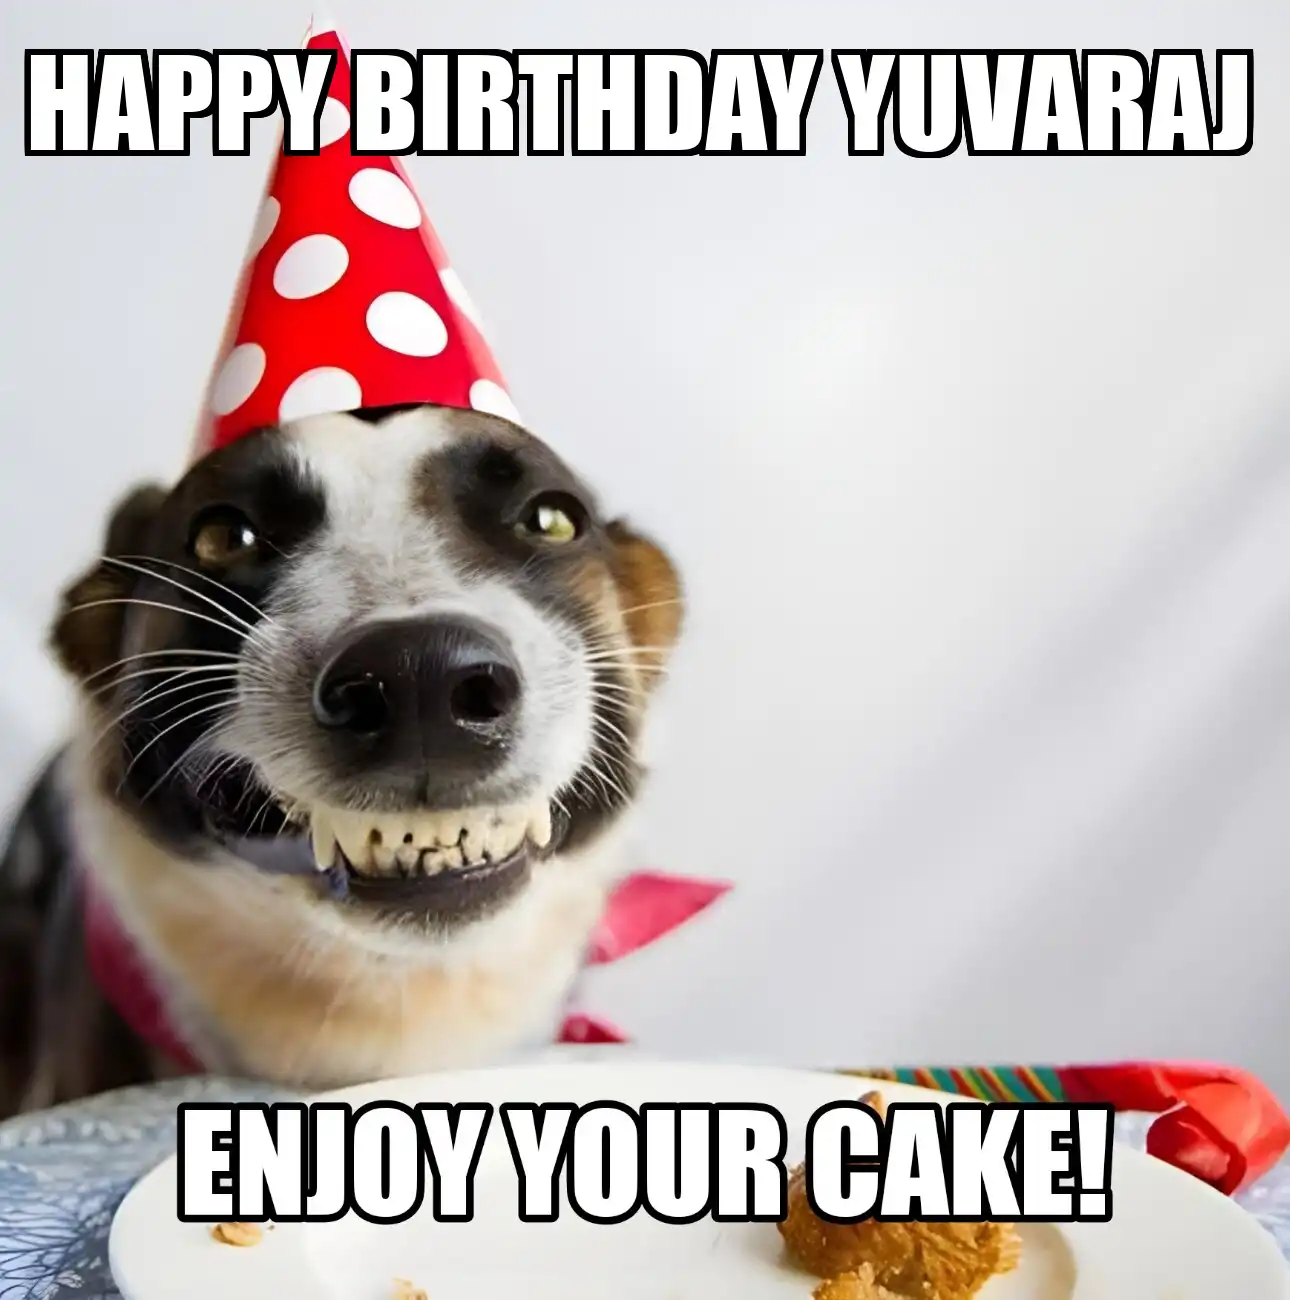 Happy Birthday Yuvaraj Enjoy Your Cake Dog Meme